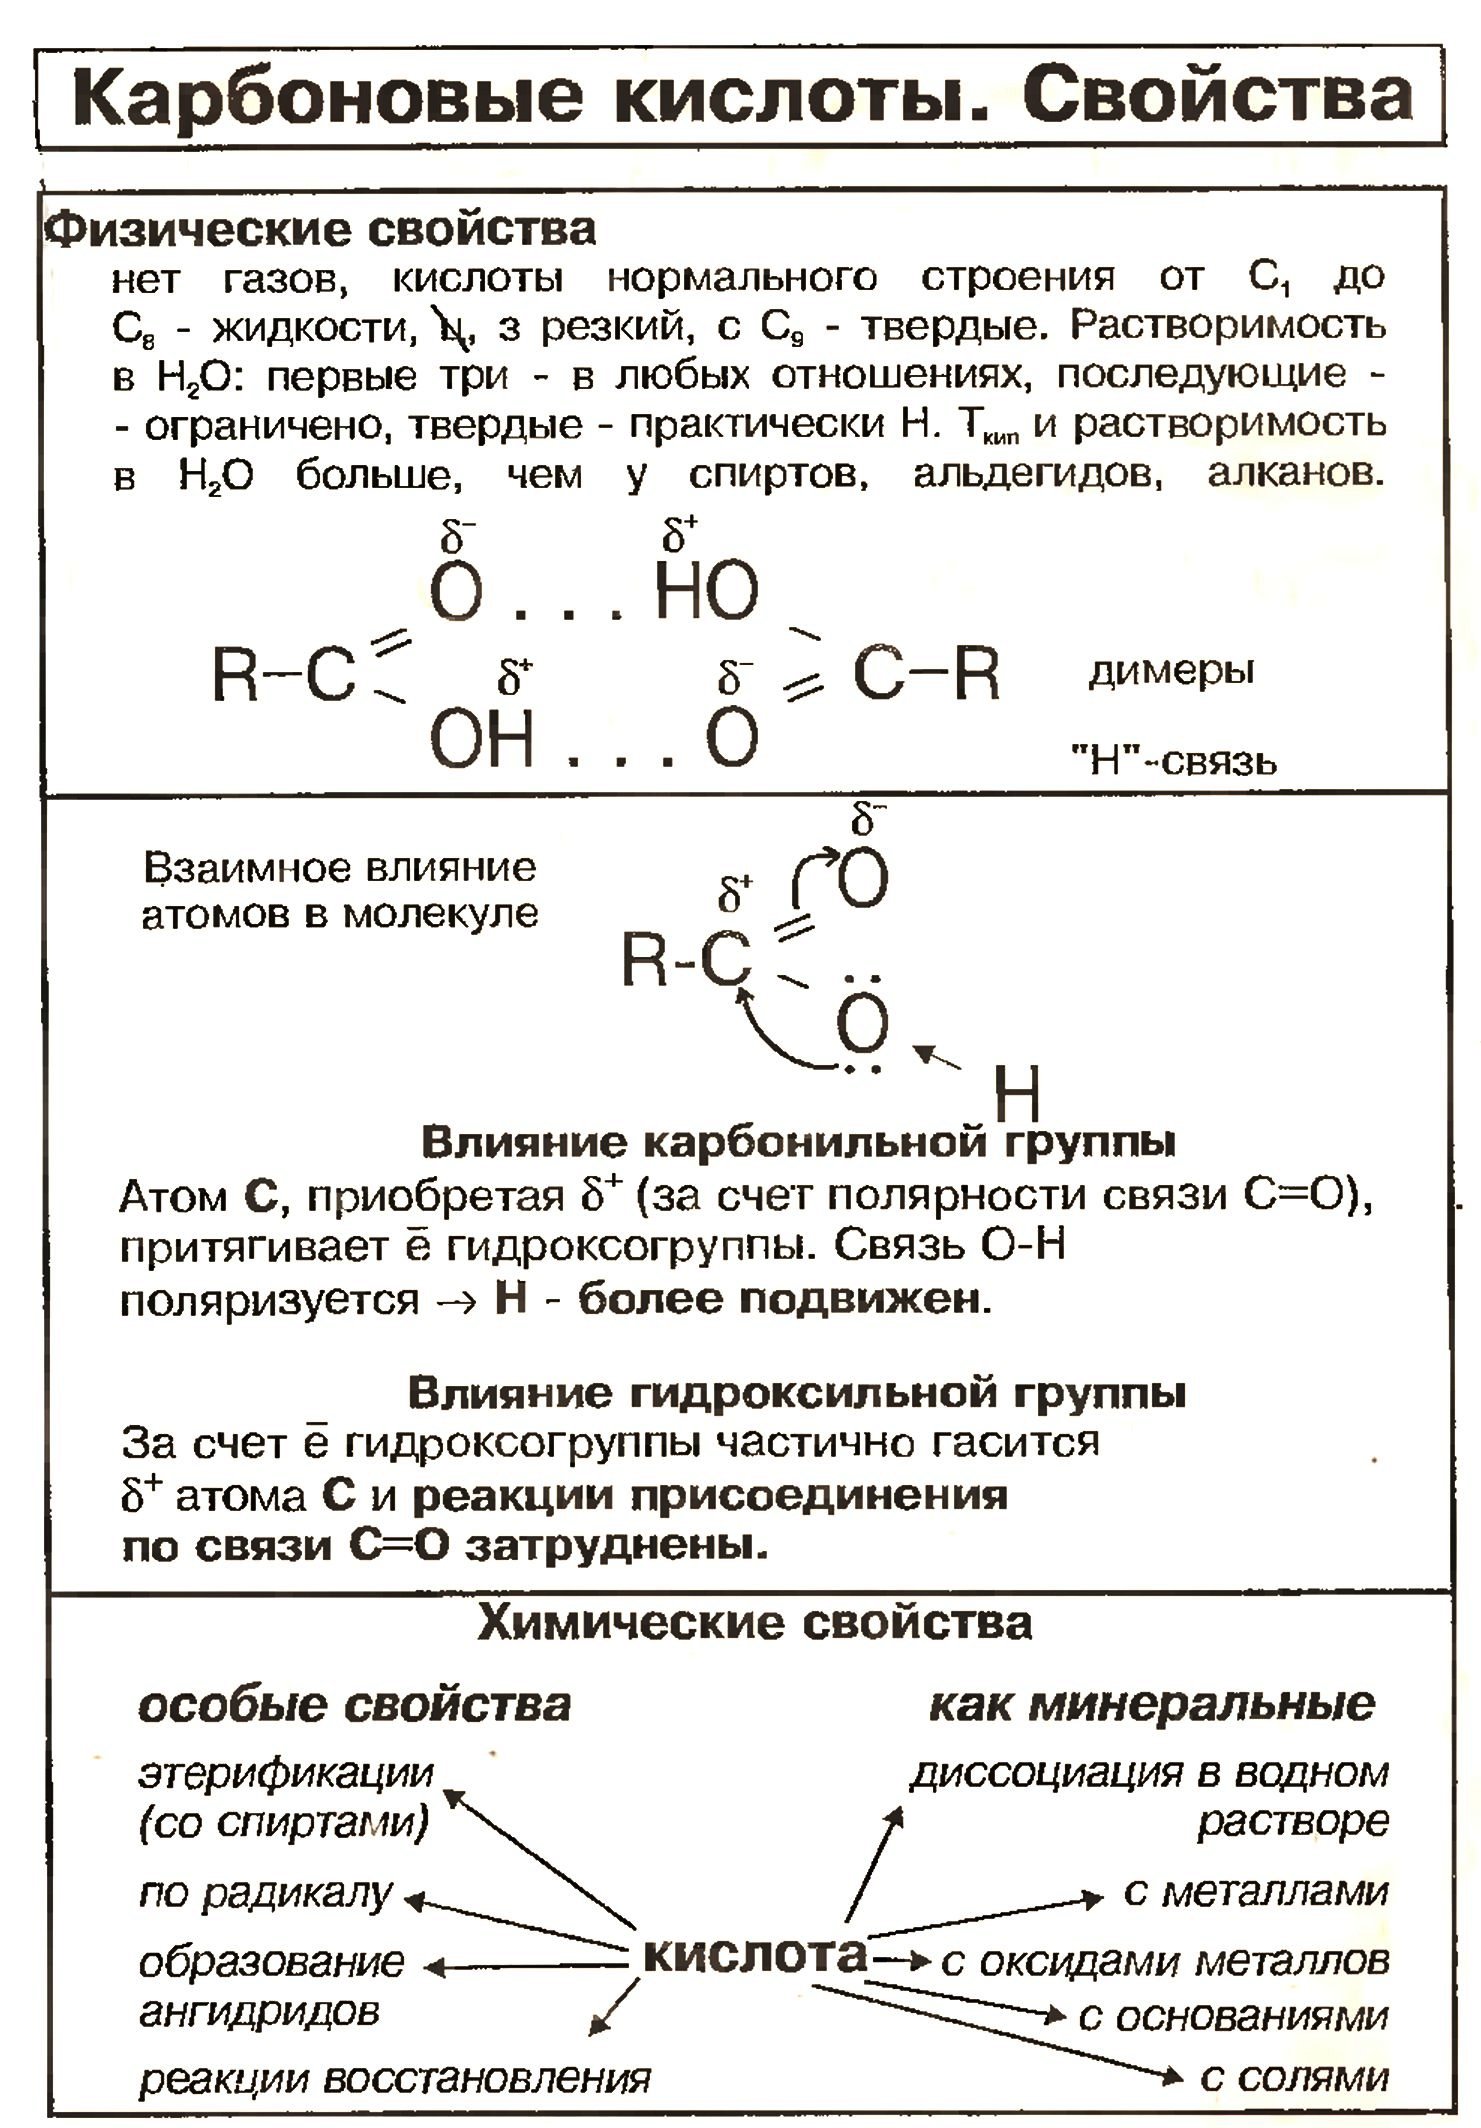 Химические свойства карбоновых кислот 10 класс. Карбоновые кислоты химические свойства и получение. Химия свойства карбоновых кислот. Карбоновые кислоты 10 класс химия уравнения. Является свойством карбоновых кислот